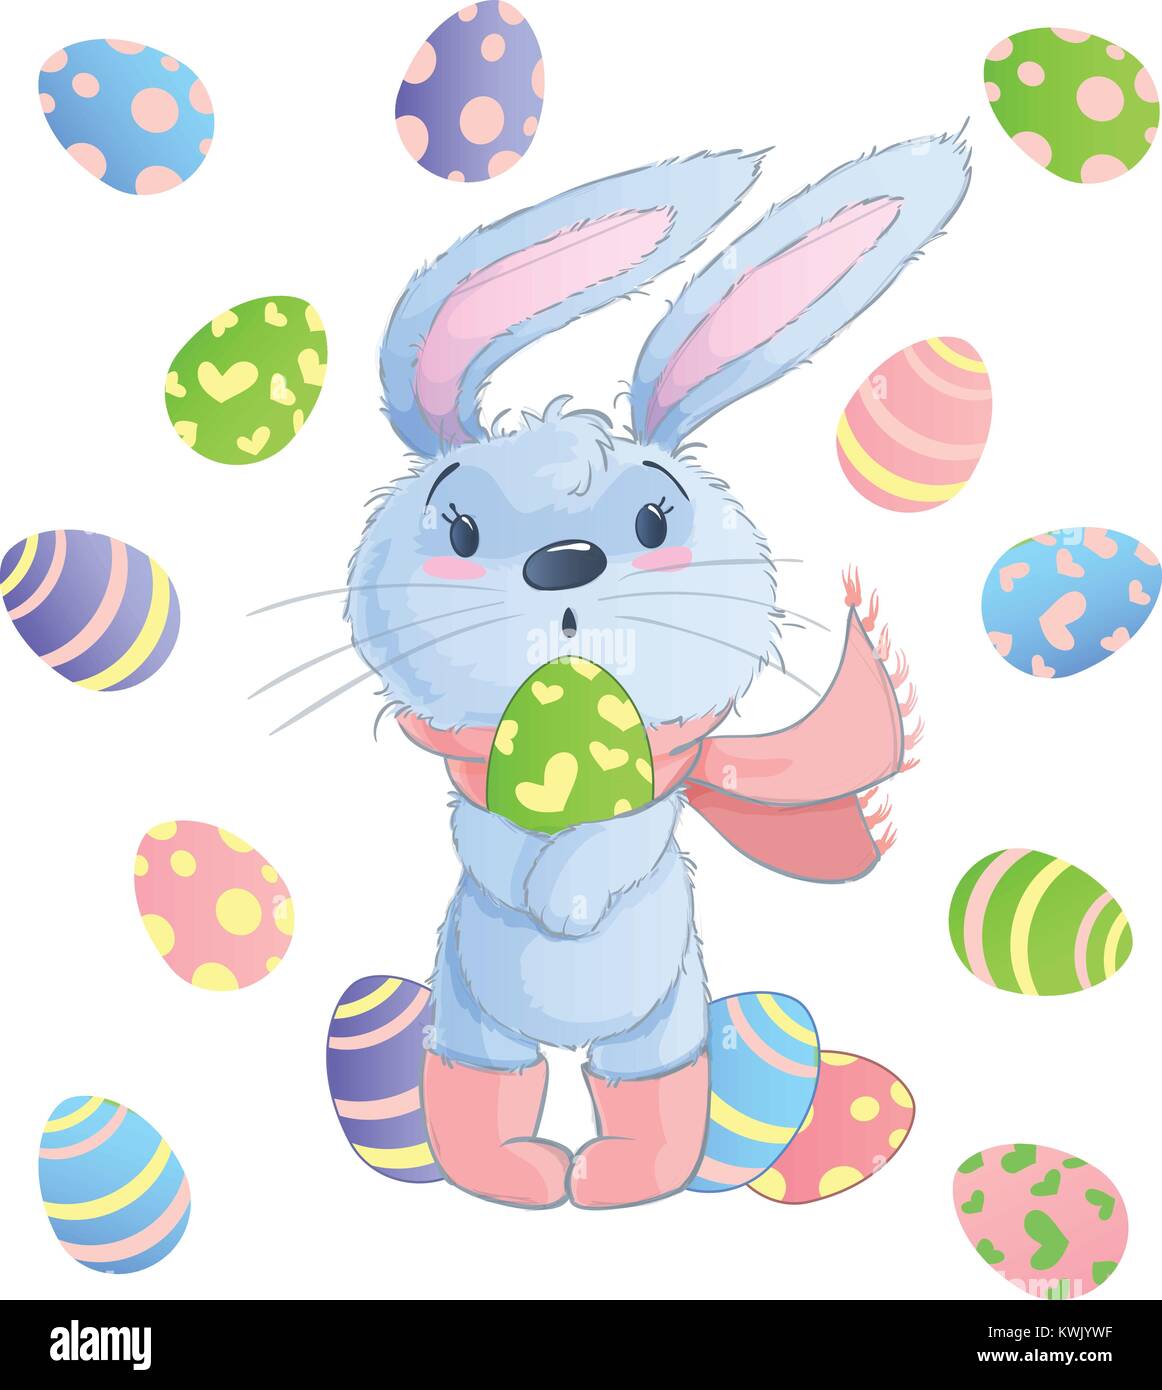 Felice Pasqua Bunny Illustrazione Vettoriale Set Di Clipart Per Pasqua Biglietto Di Auguri Invito Con Simpatico Coniglio E Le Uova Di Pasqua Su Sfondo Isolato Immagine E Vettoriale Alamy